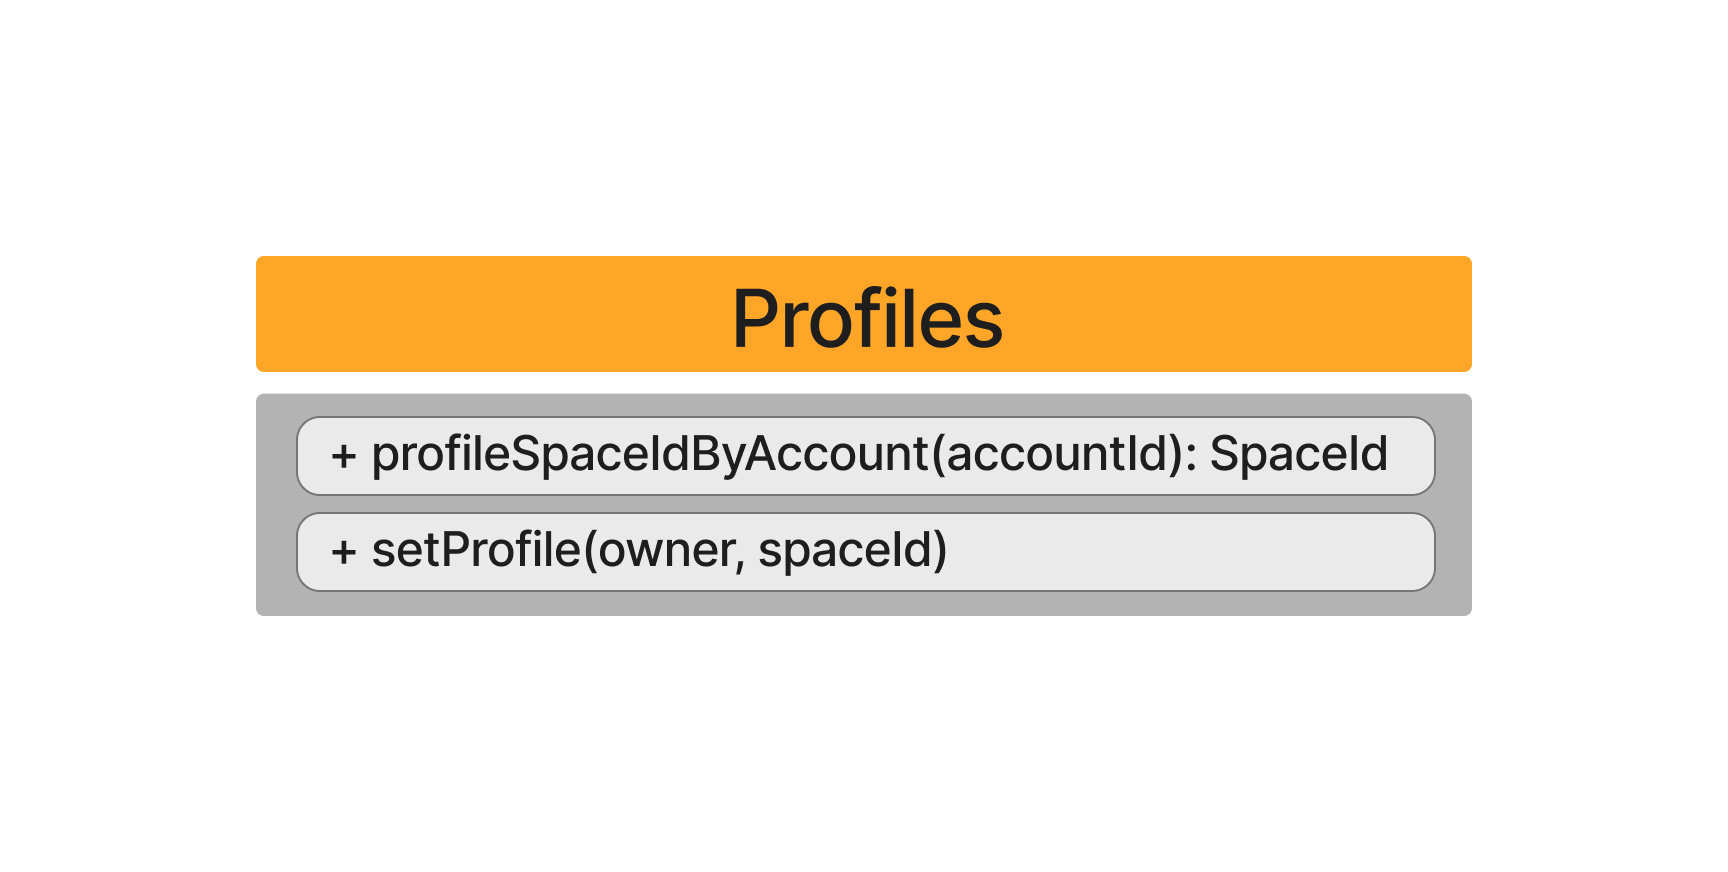 Profiles-UML